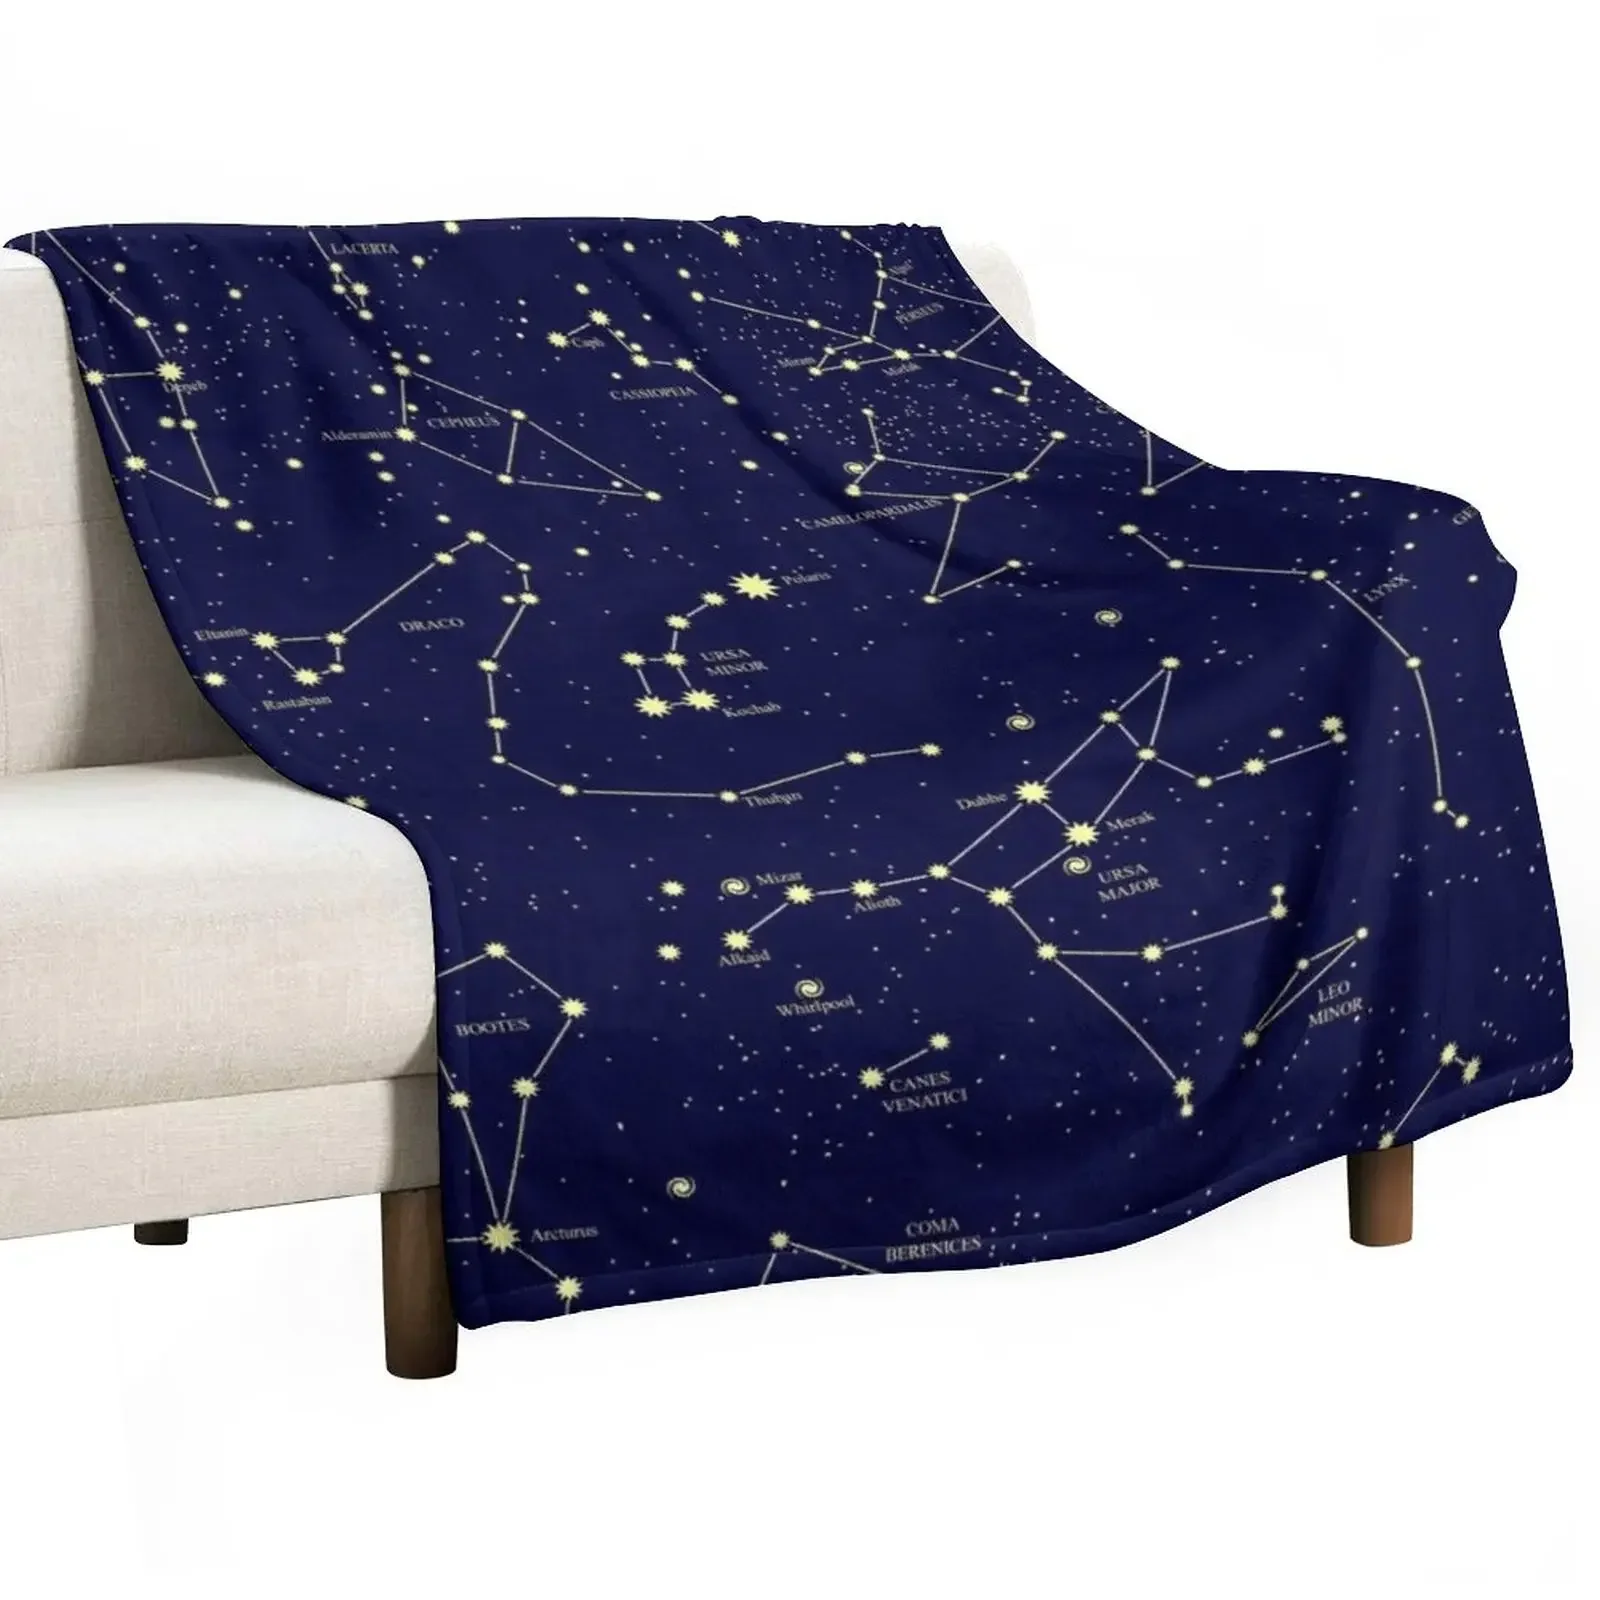 

Одеяло с созвездиями, астрономическая карта, ночное небо, роскошное утолщенное, для косплея, большие движущиеся одеяла из аниме